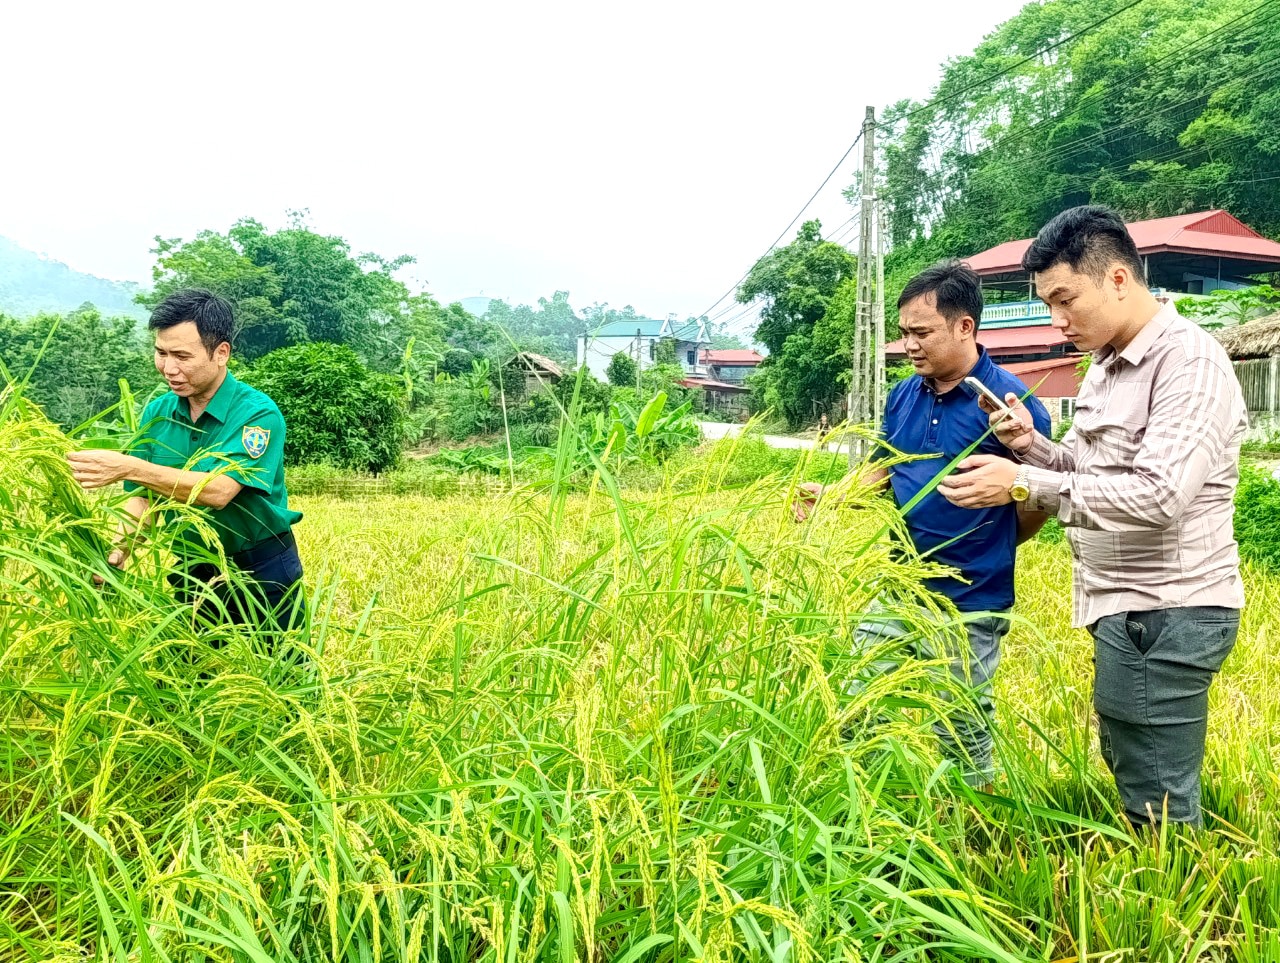 Hàng trăm hộ dân Phú Thọ mất trắng vụ xuân vì mua giống lúa lạ được 